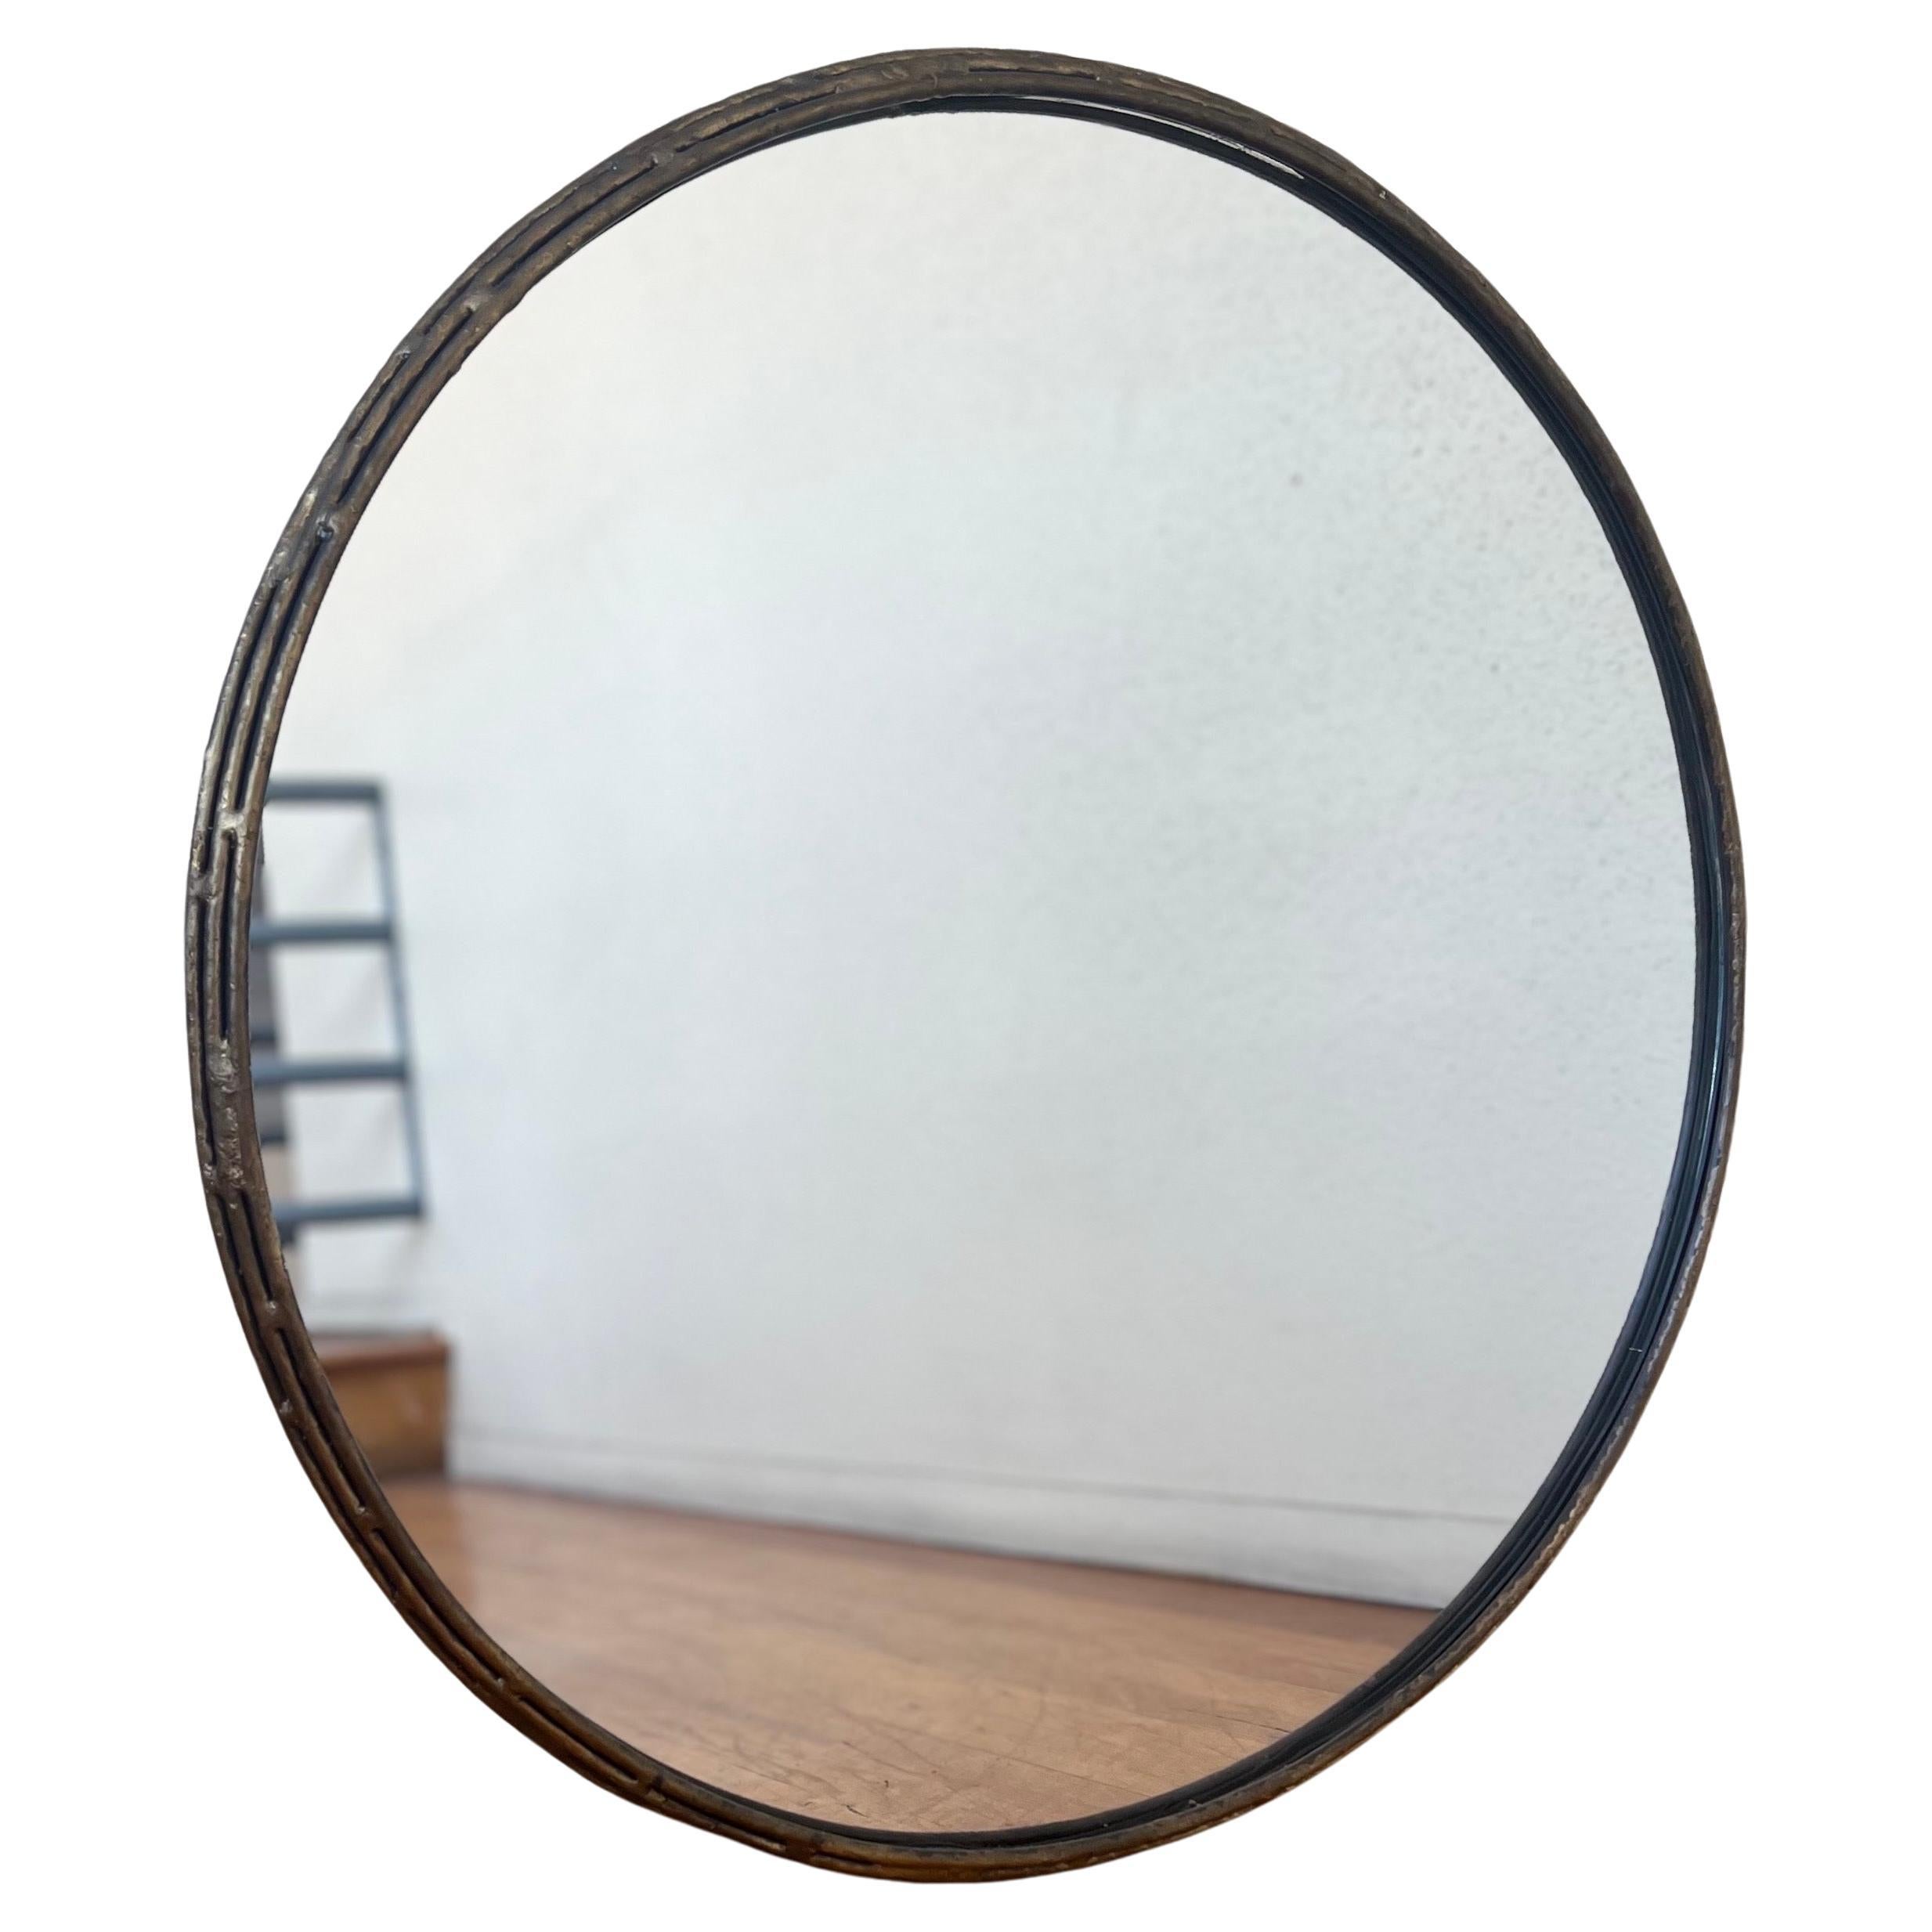 Patinated verdigris finish round mirror nice clean condition simple elegant design.